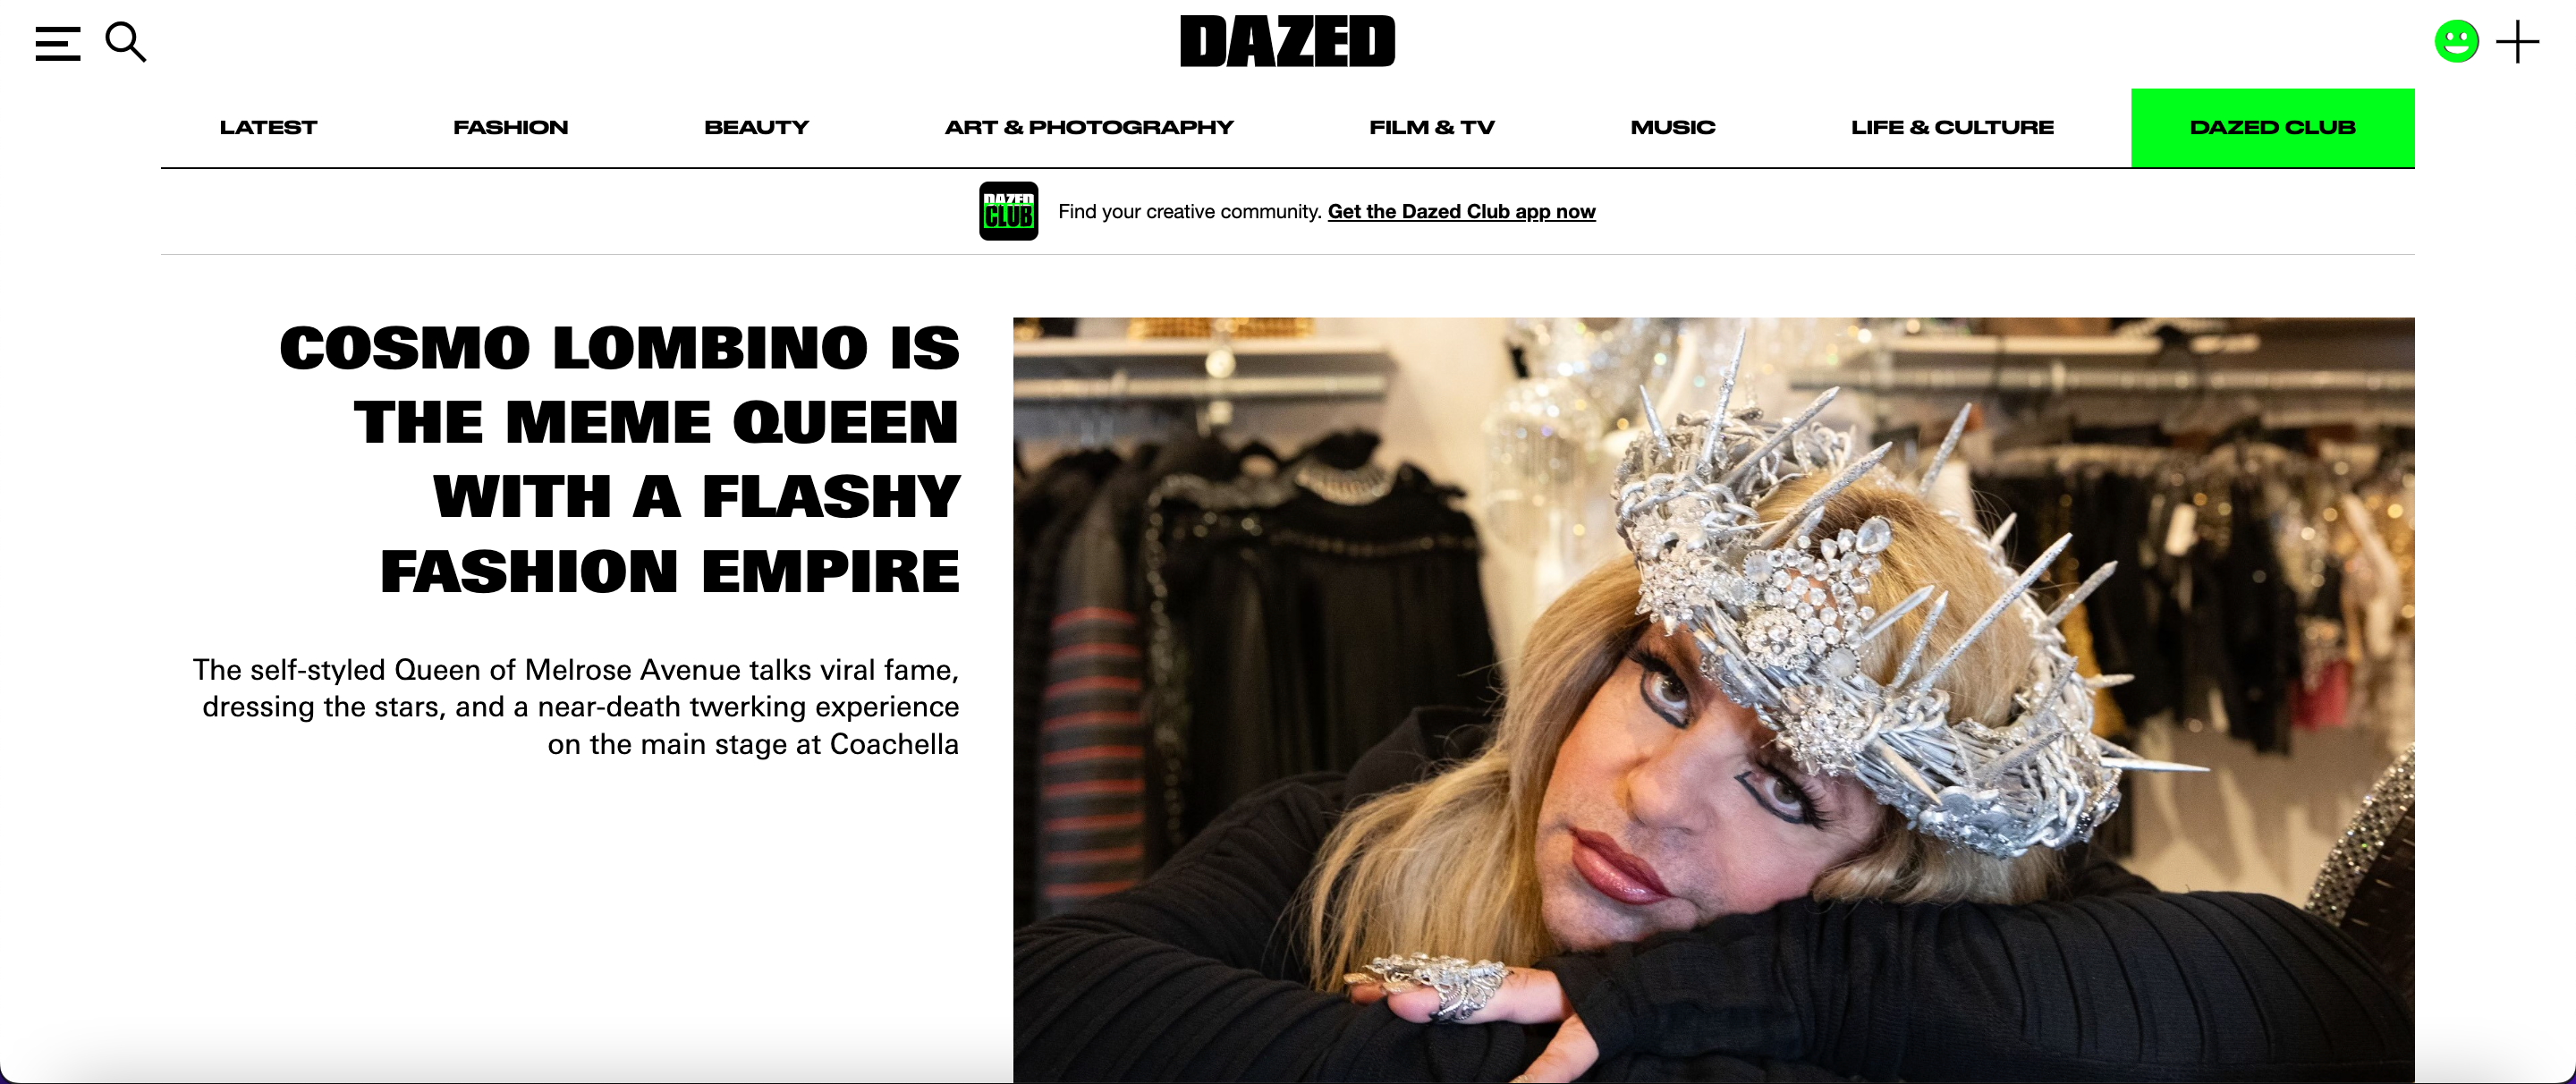 DazedDigital.com - "Cosmo Lombino Is The Meme Queen"